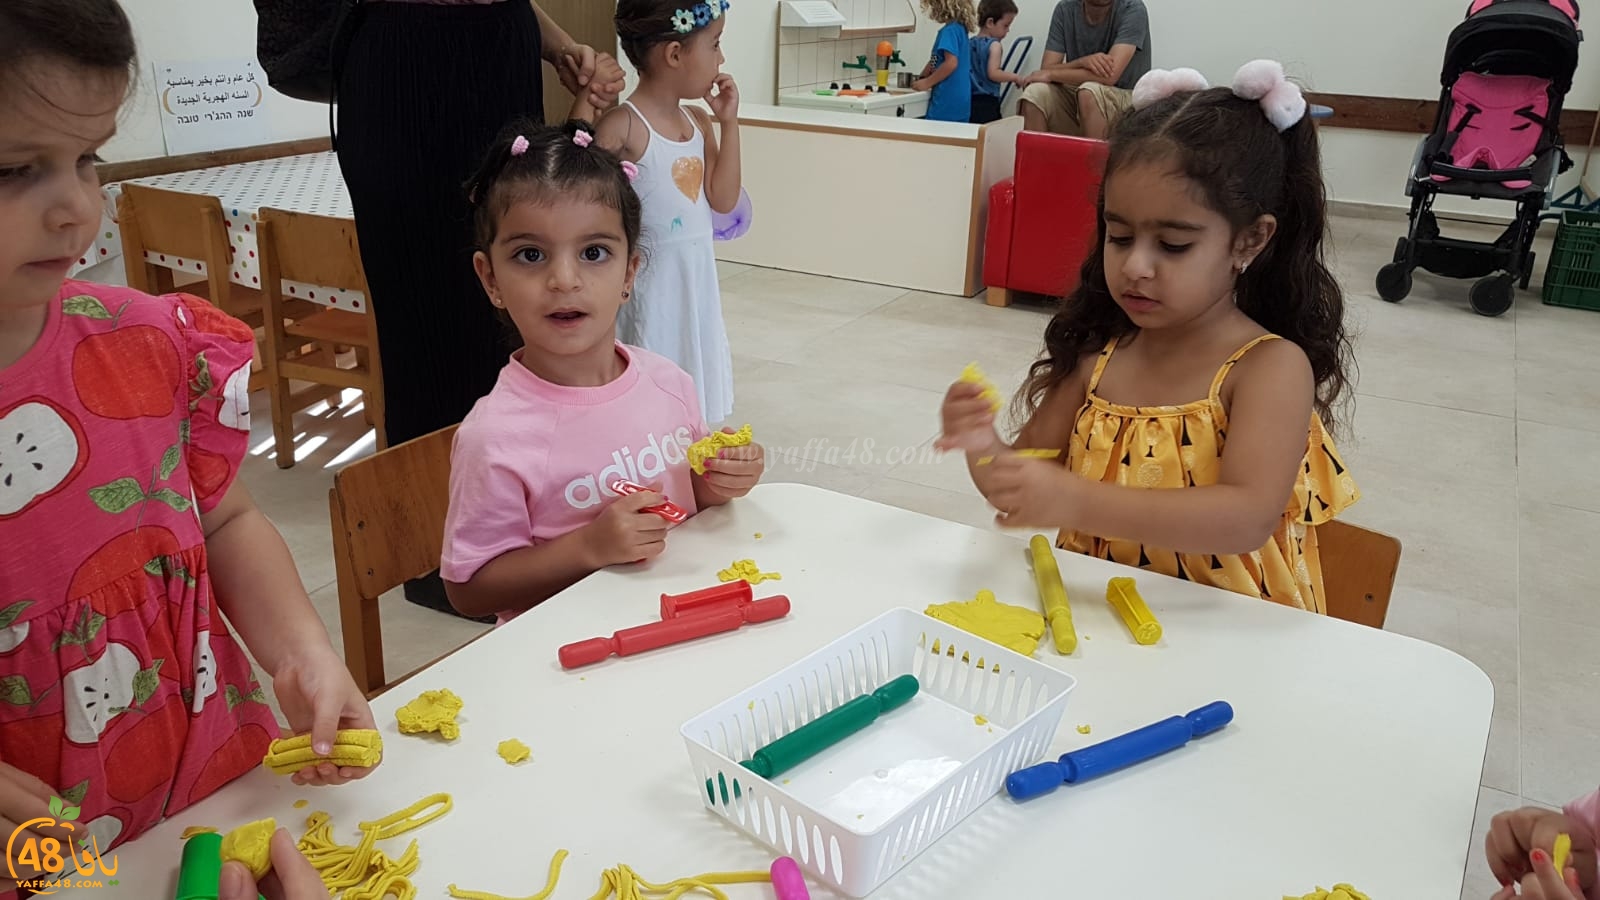 بالصور: افتتاح العام الدراسي الجديد في مدارس يافا اللد والرملة 